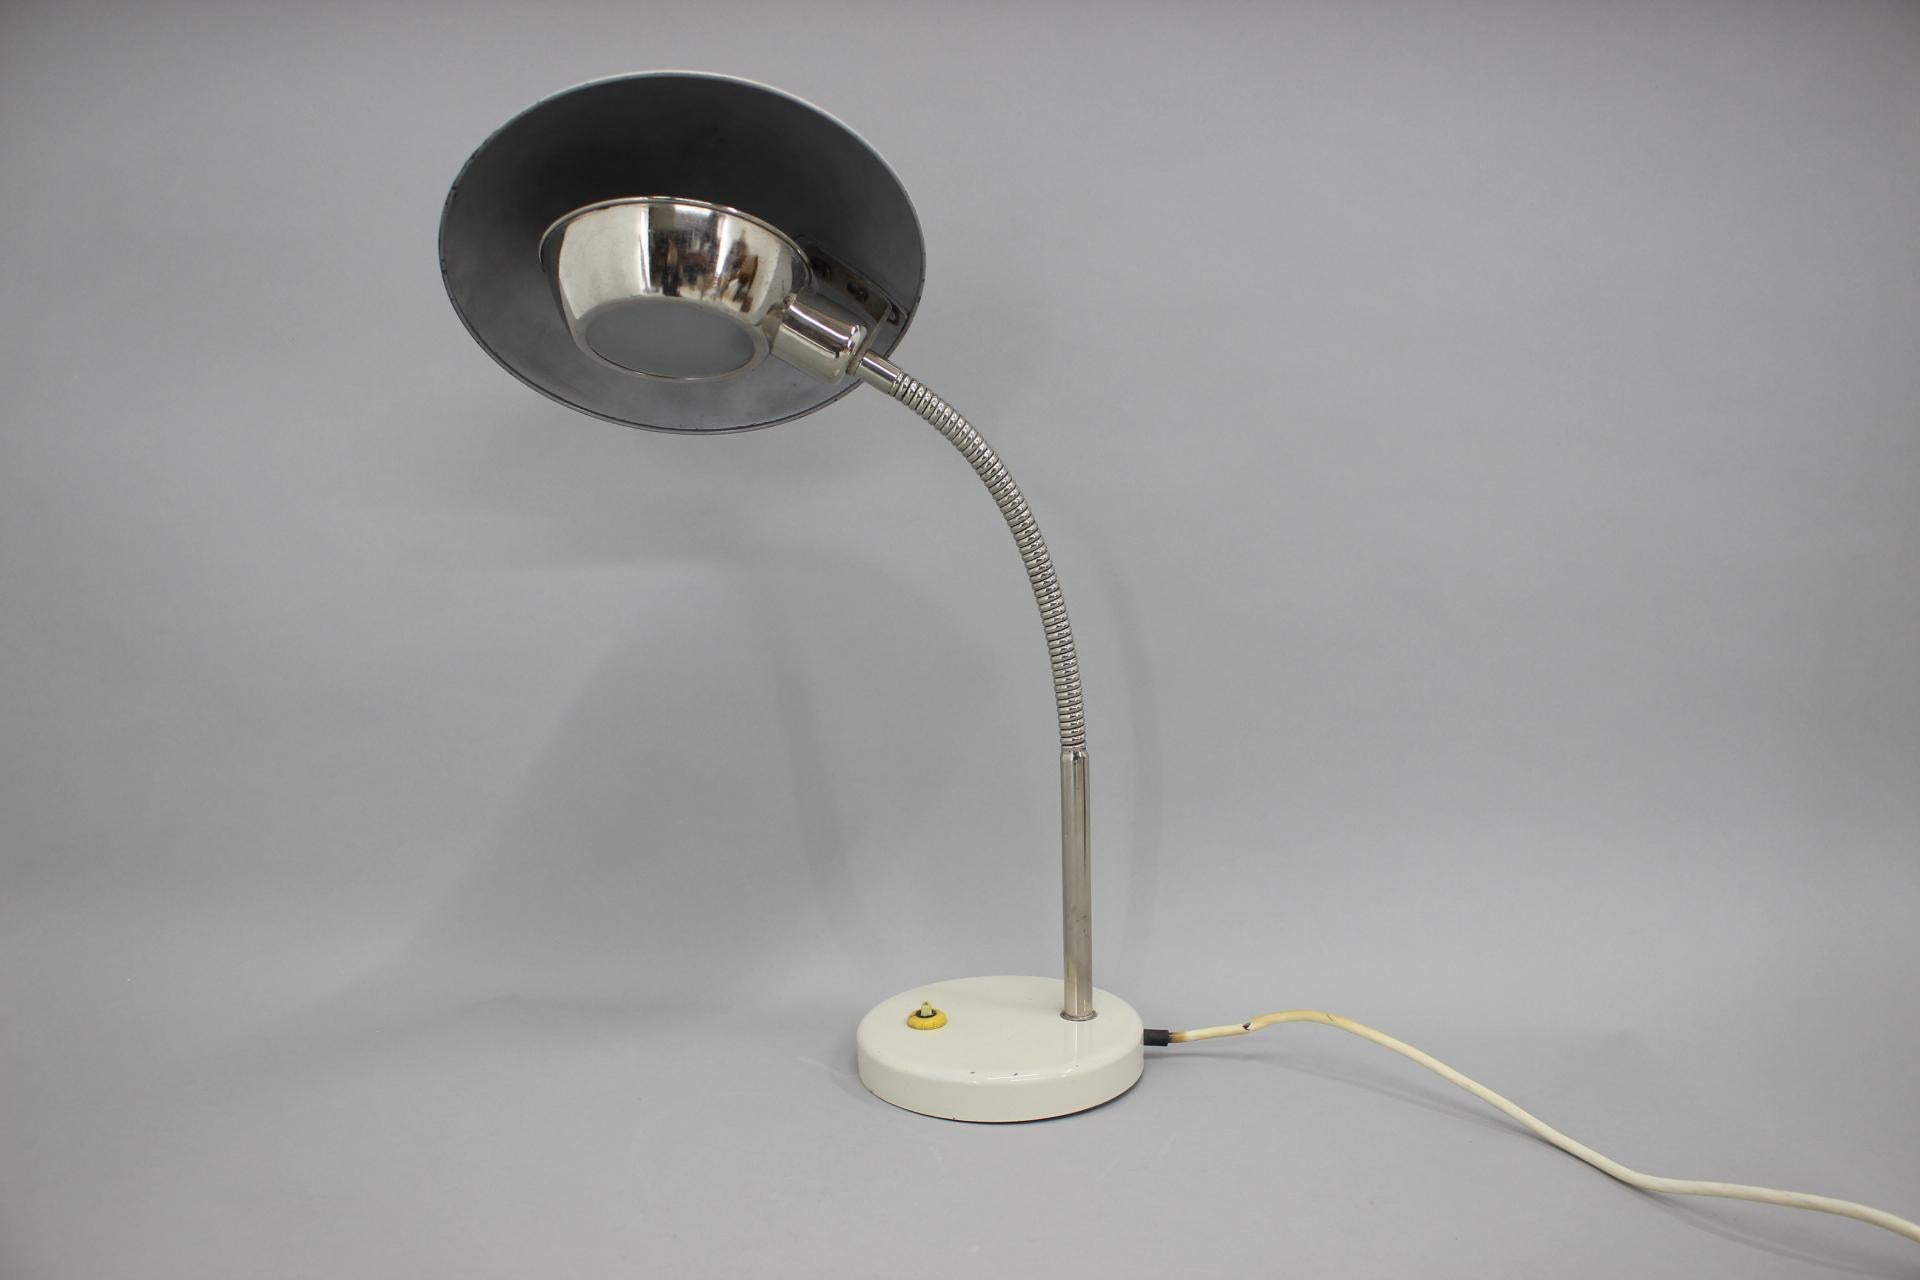 Lampe de table avec abat-jour flexible.
Câblé : 1x40W, ampoule E12-E14.
Adaptateur pour prise américaine inclus.
Bon état d'origine avec quelques signes d'utilisation.